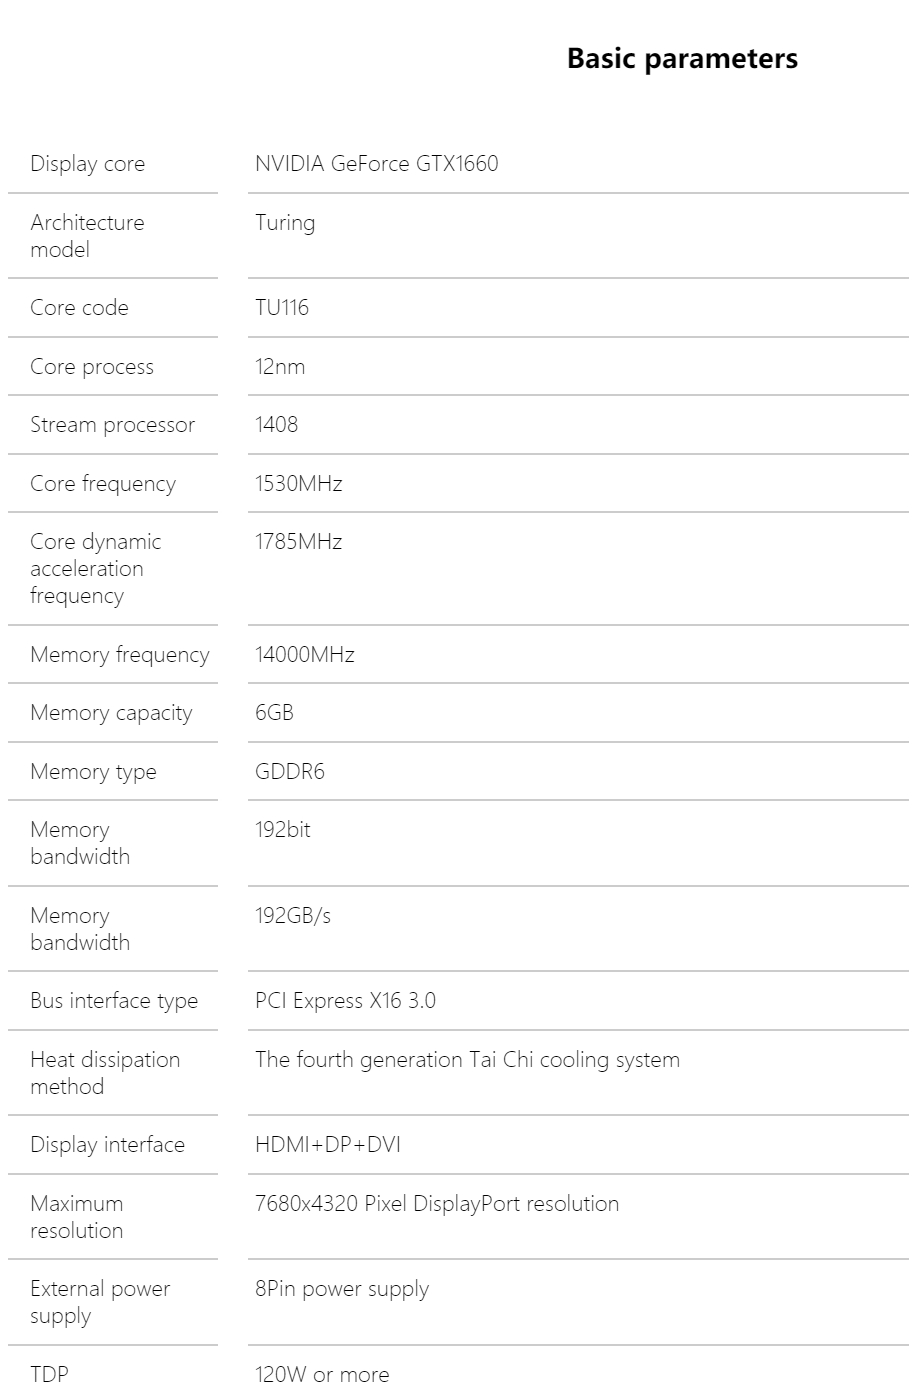 Опубликованы цены, параметры и фото видеокарты Nvidia GeForce GTX 1660 Super | SE7EN.ws - Изображение 1